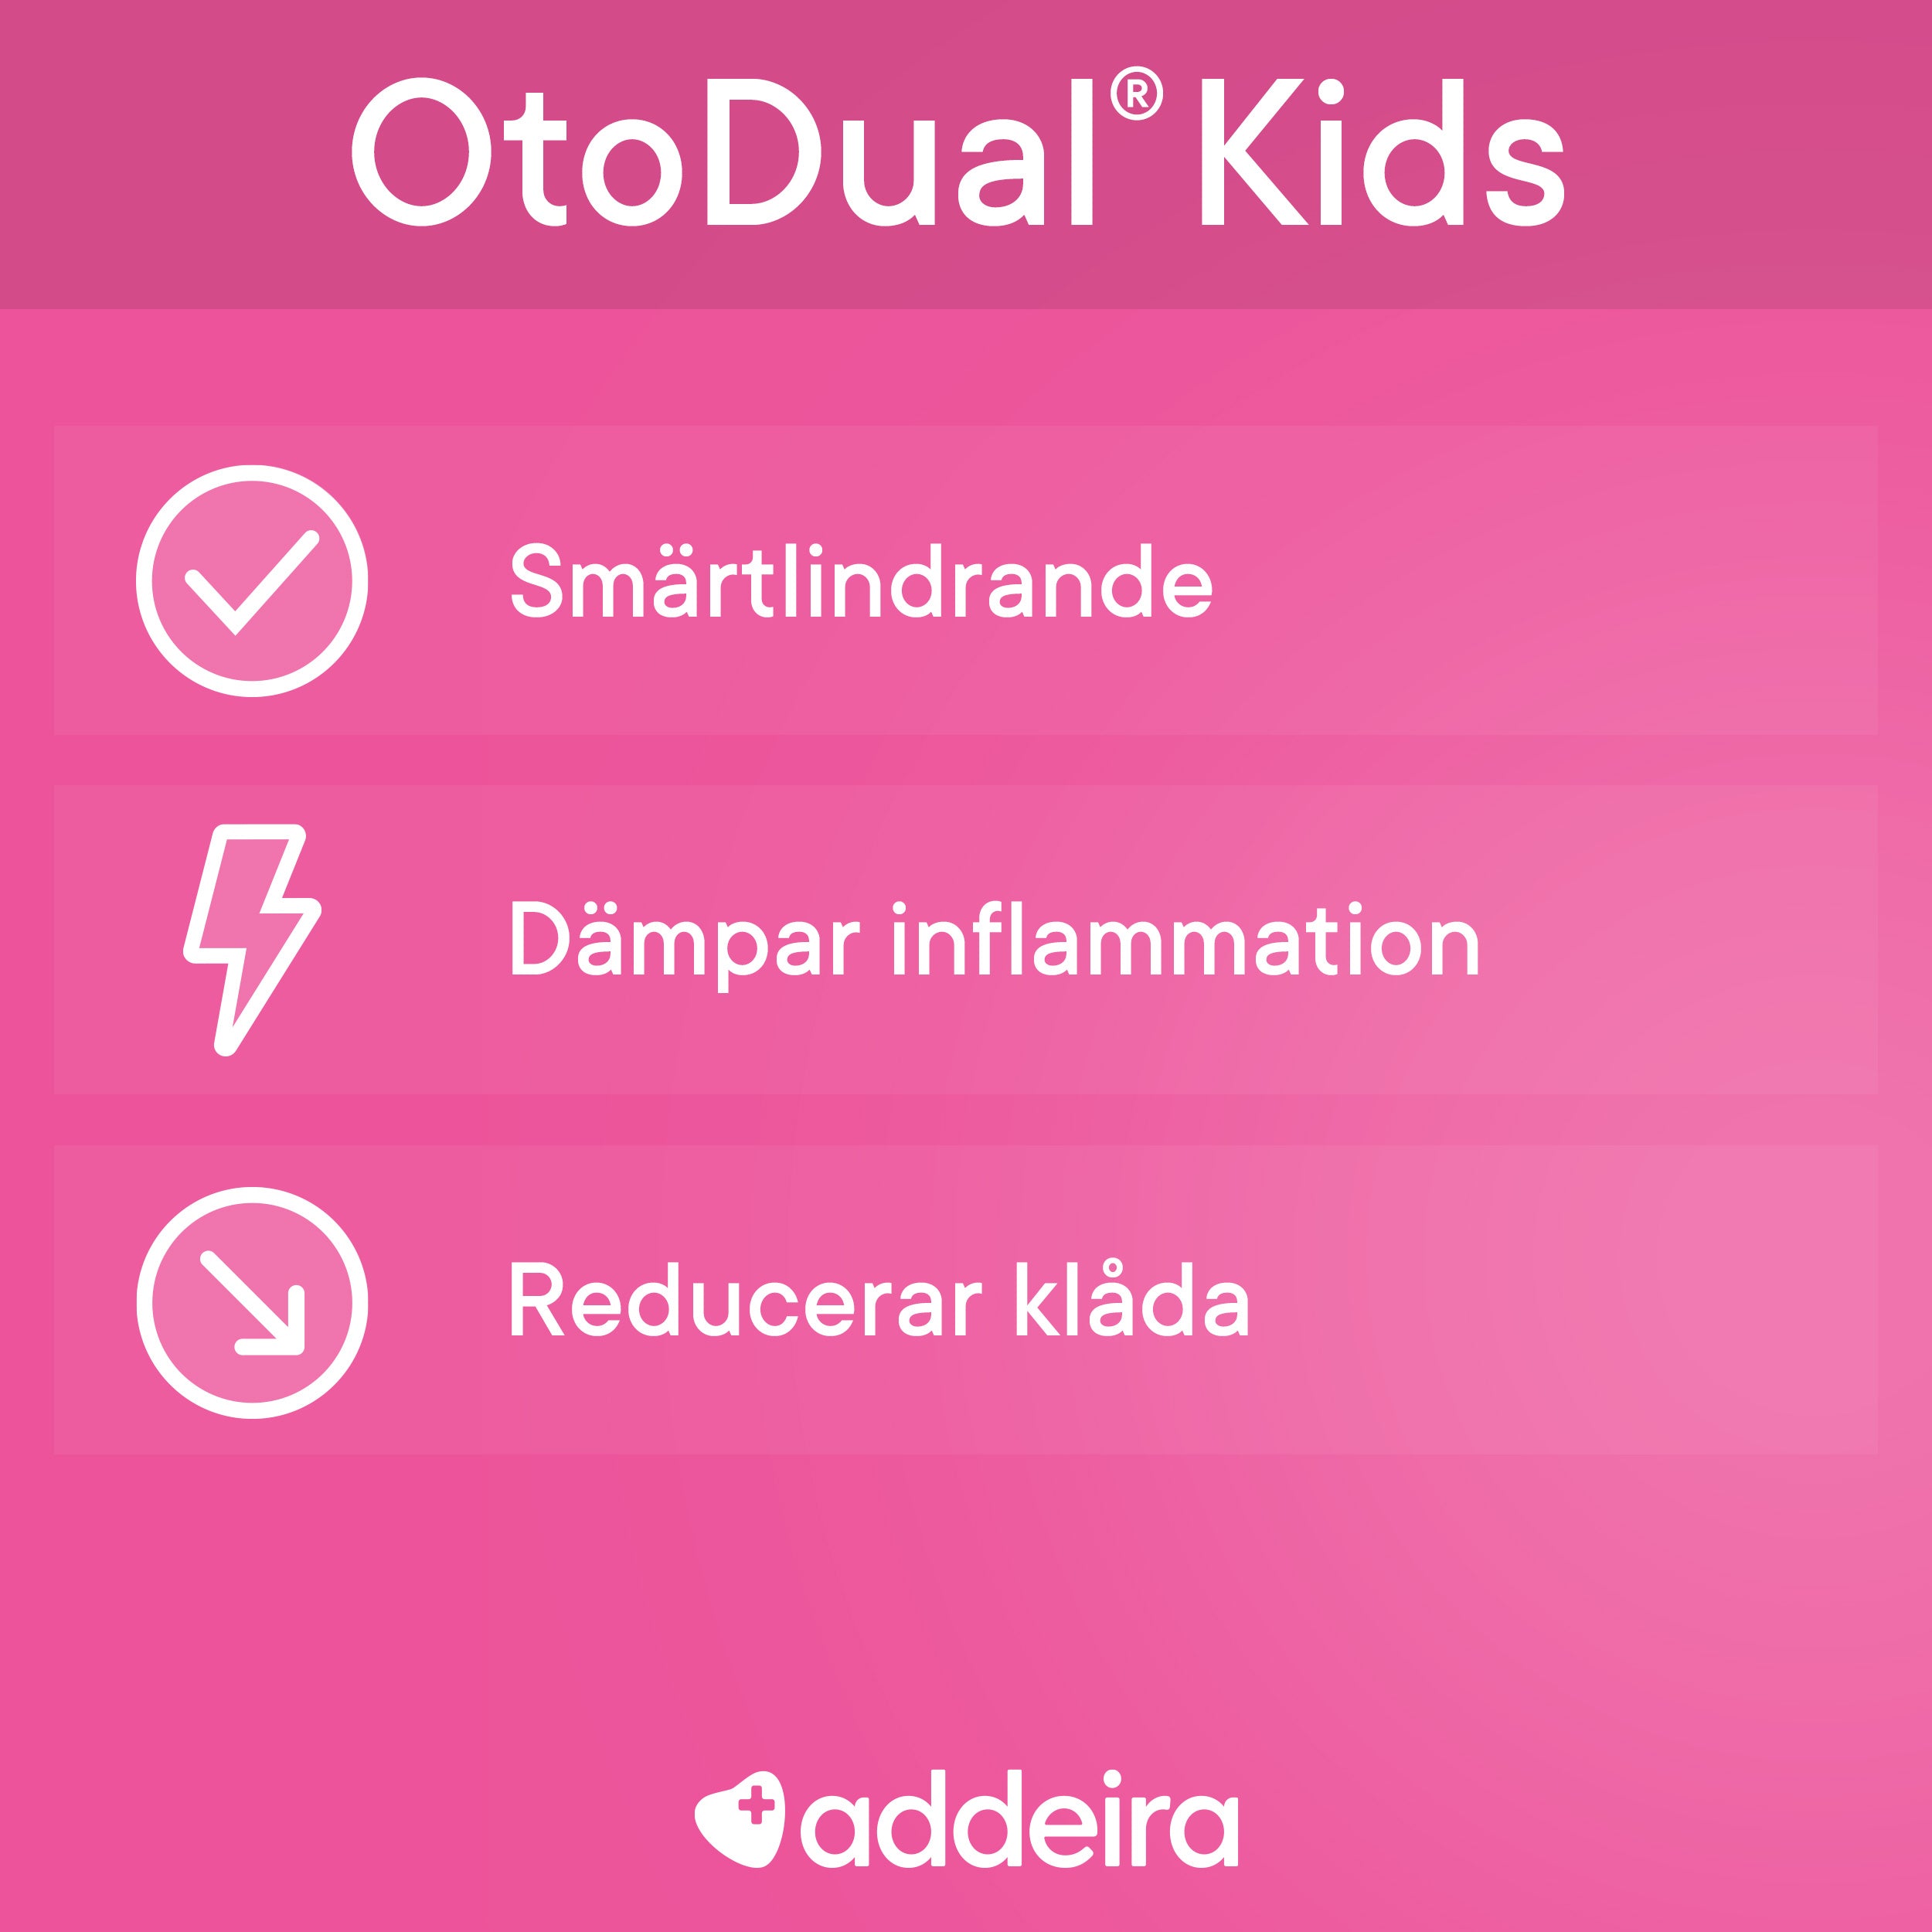 OtoDual-Kids_4c2c7852-f643-4366-82b6-b29f2c0d5e2e.jpg